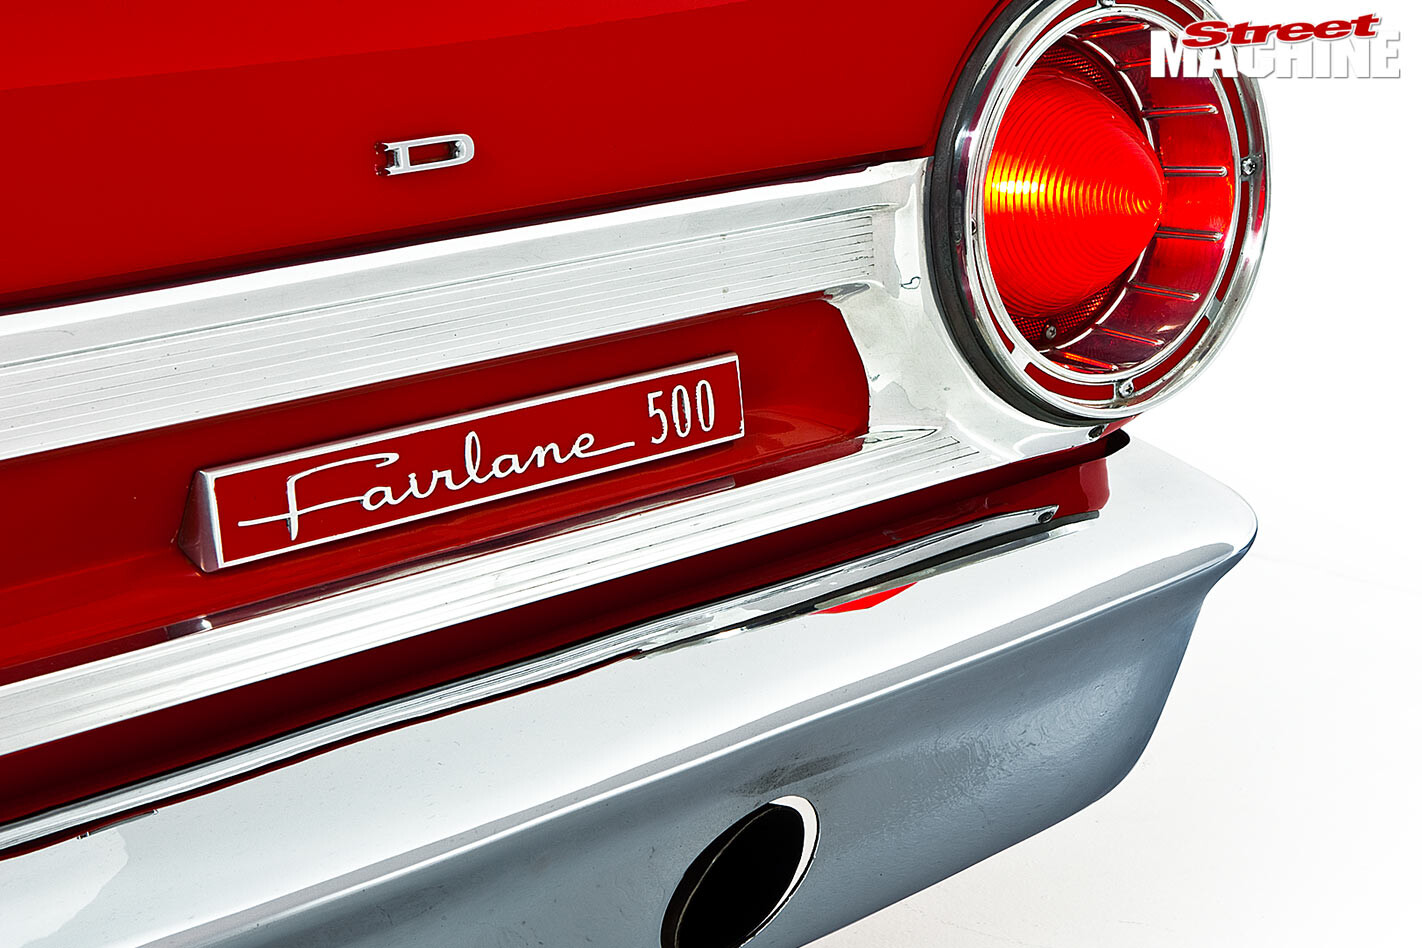 Ford Fairlane rear